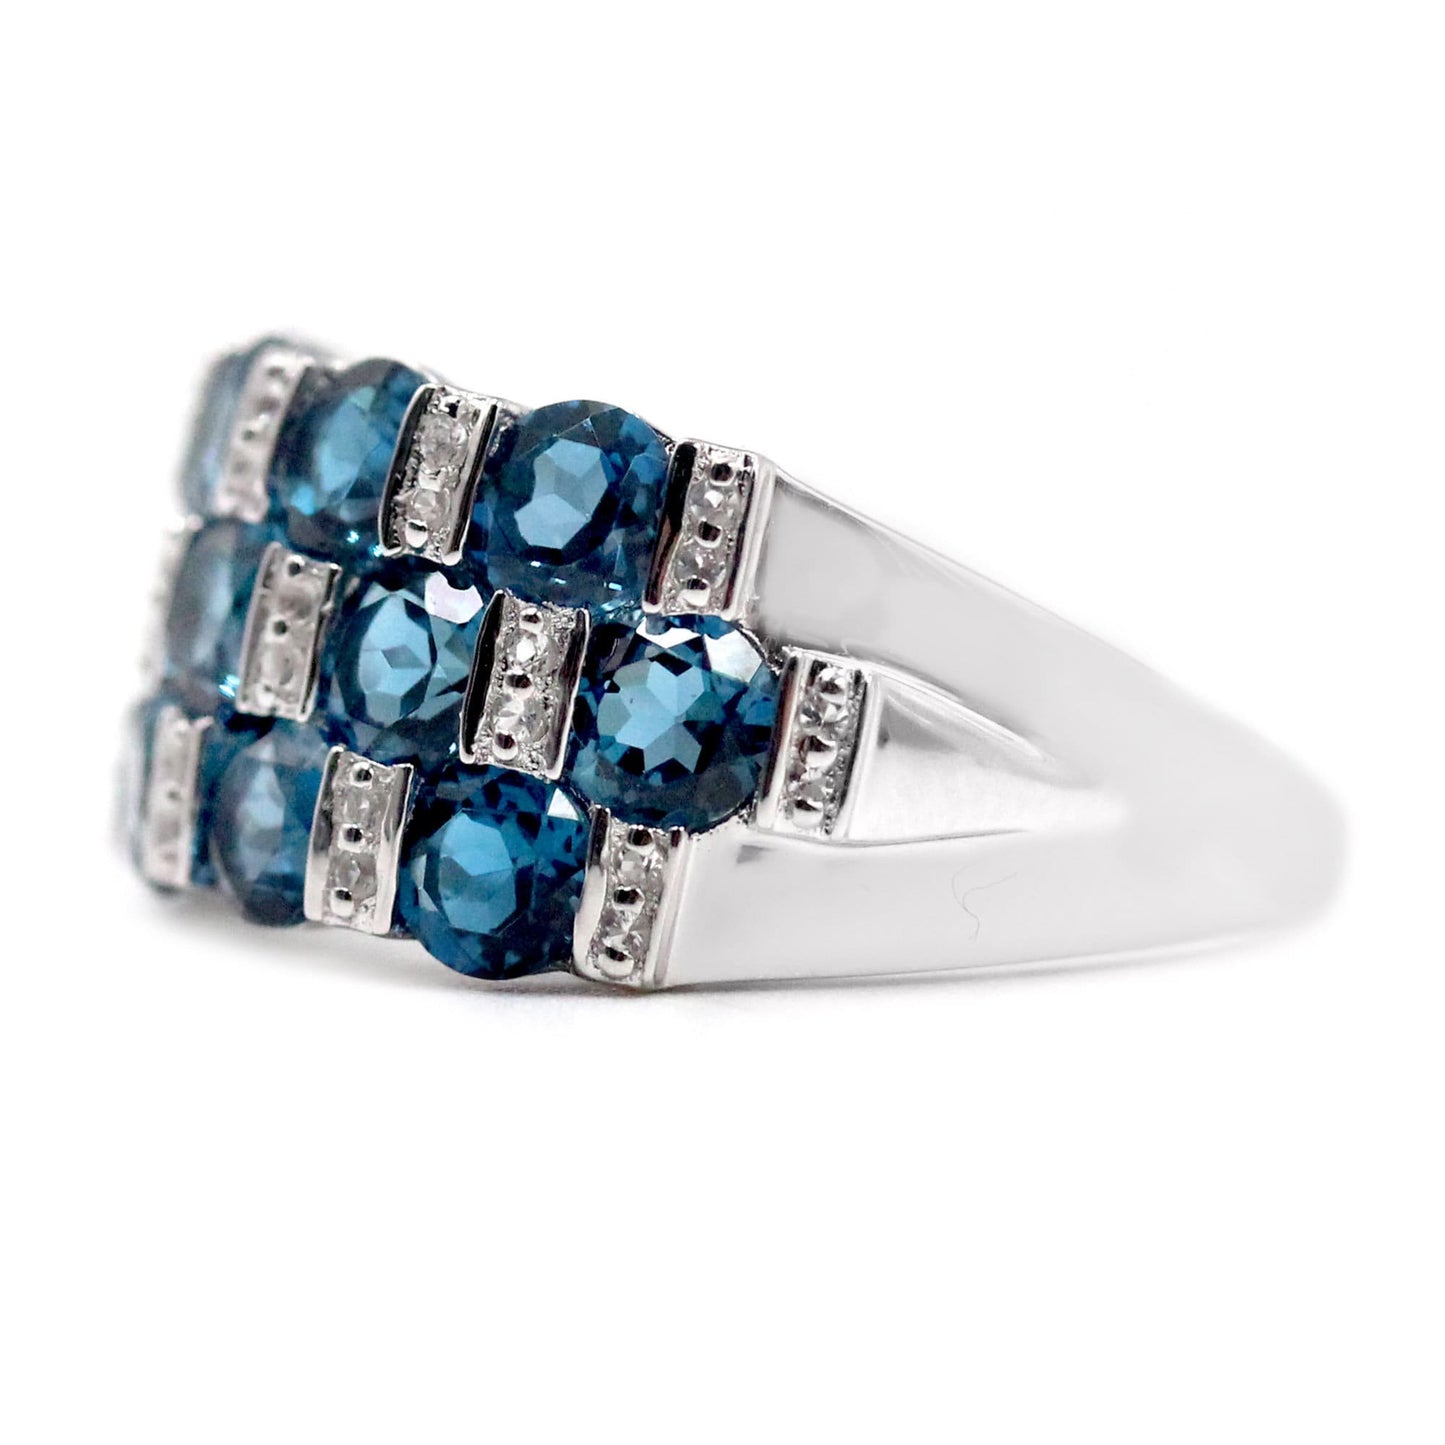 London Blue Topaz Gemstone Ring, 925 Sterling Silver Ring, Engagement Ring, Birthstone Ring-Gemstone Jewelry Anniversary Gift-Gift For